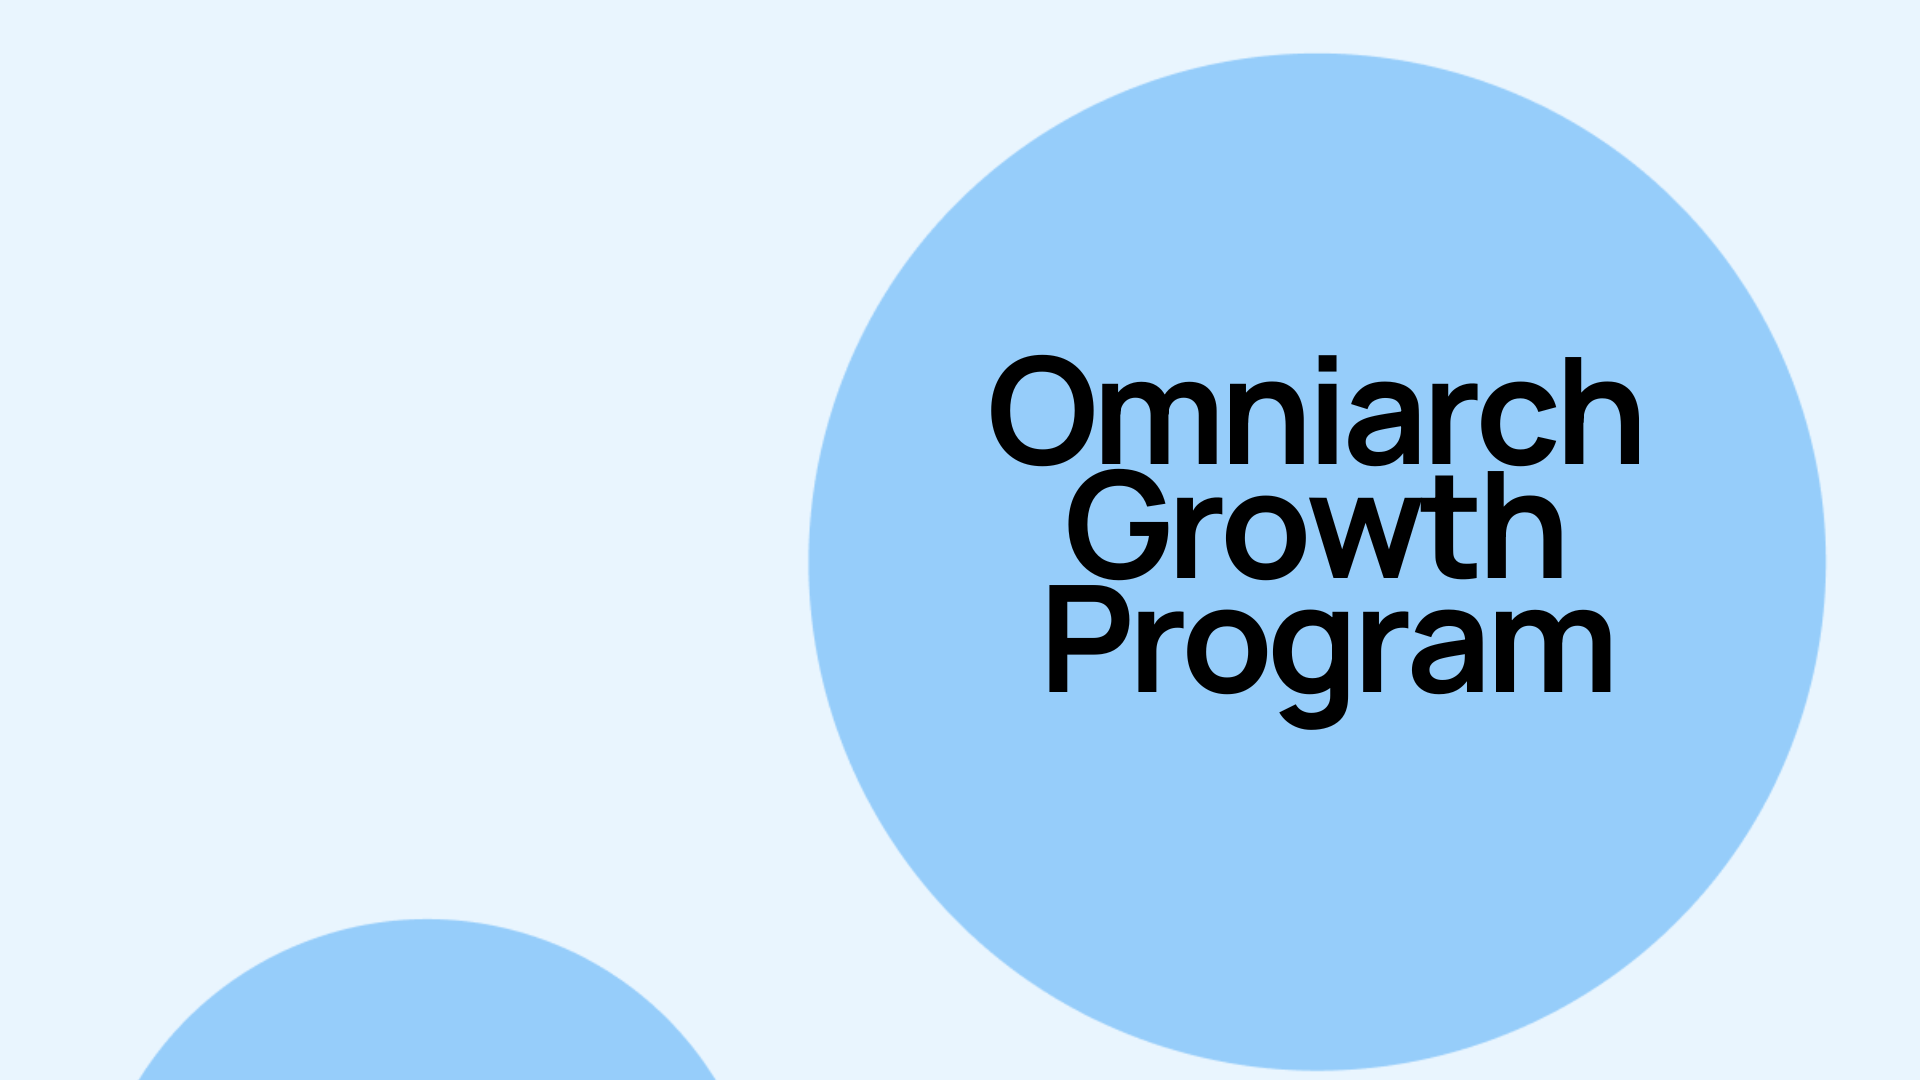 Omniarch Growth Program